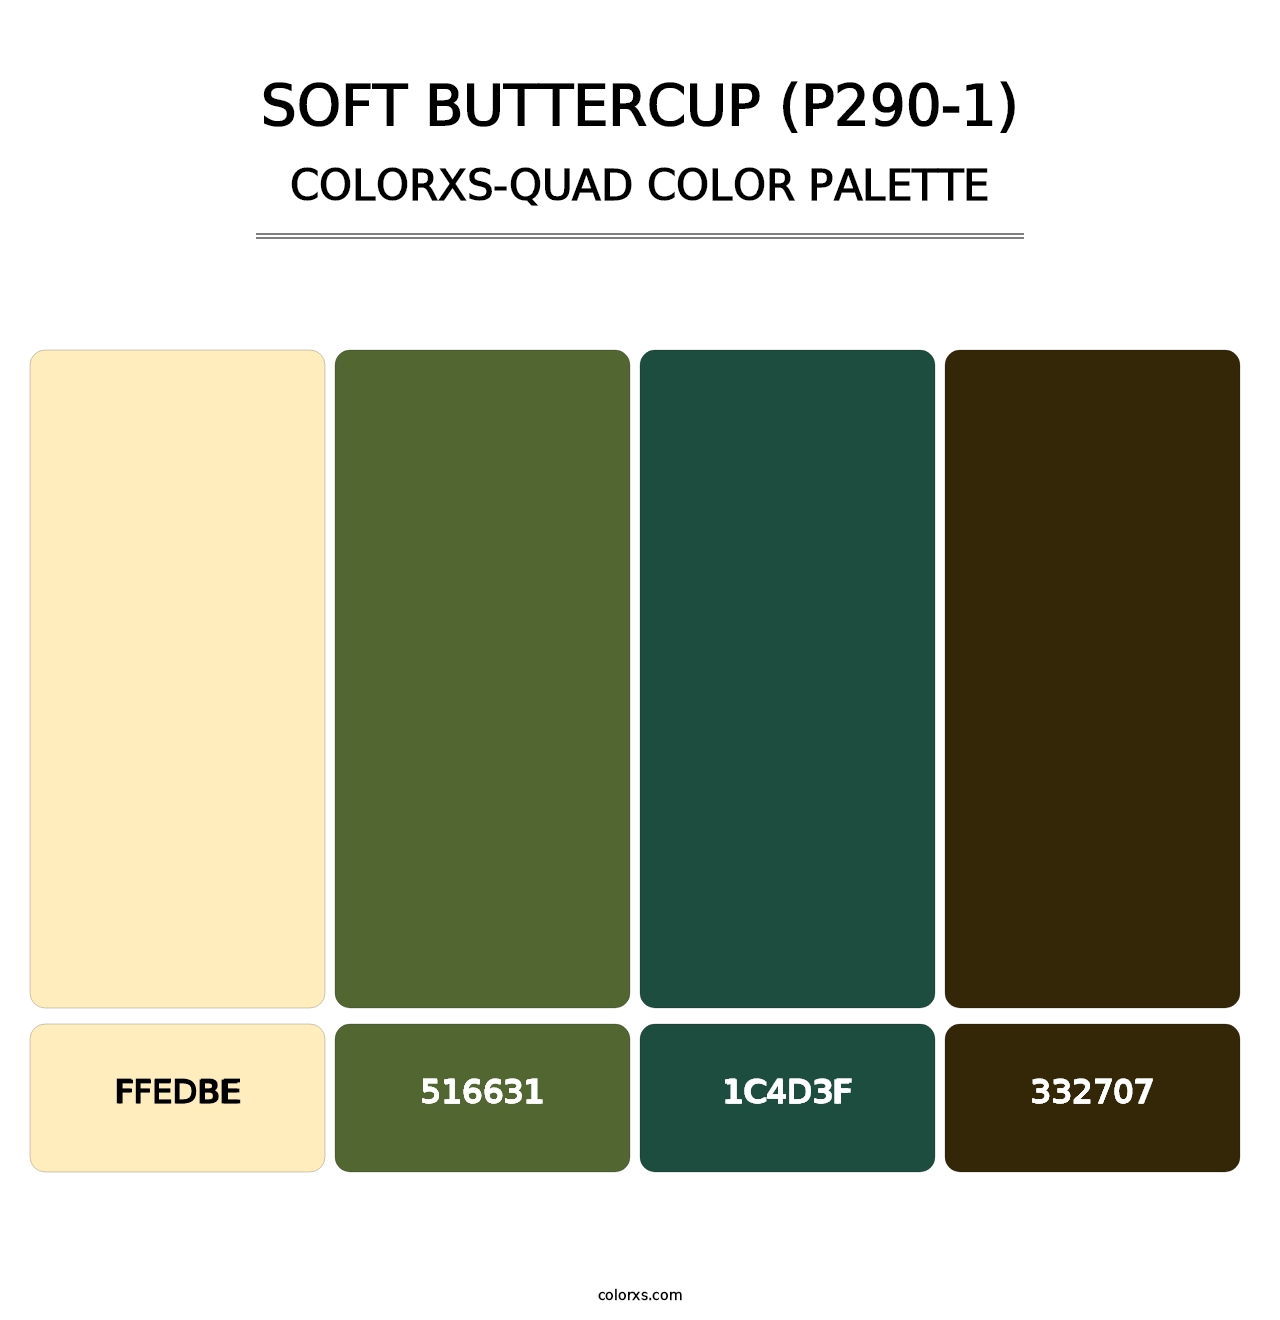 Soft Buttercup (P290-1) - Colorxs Quad Palette